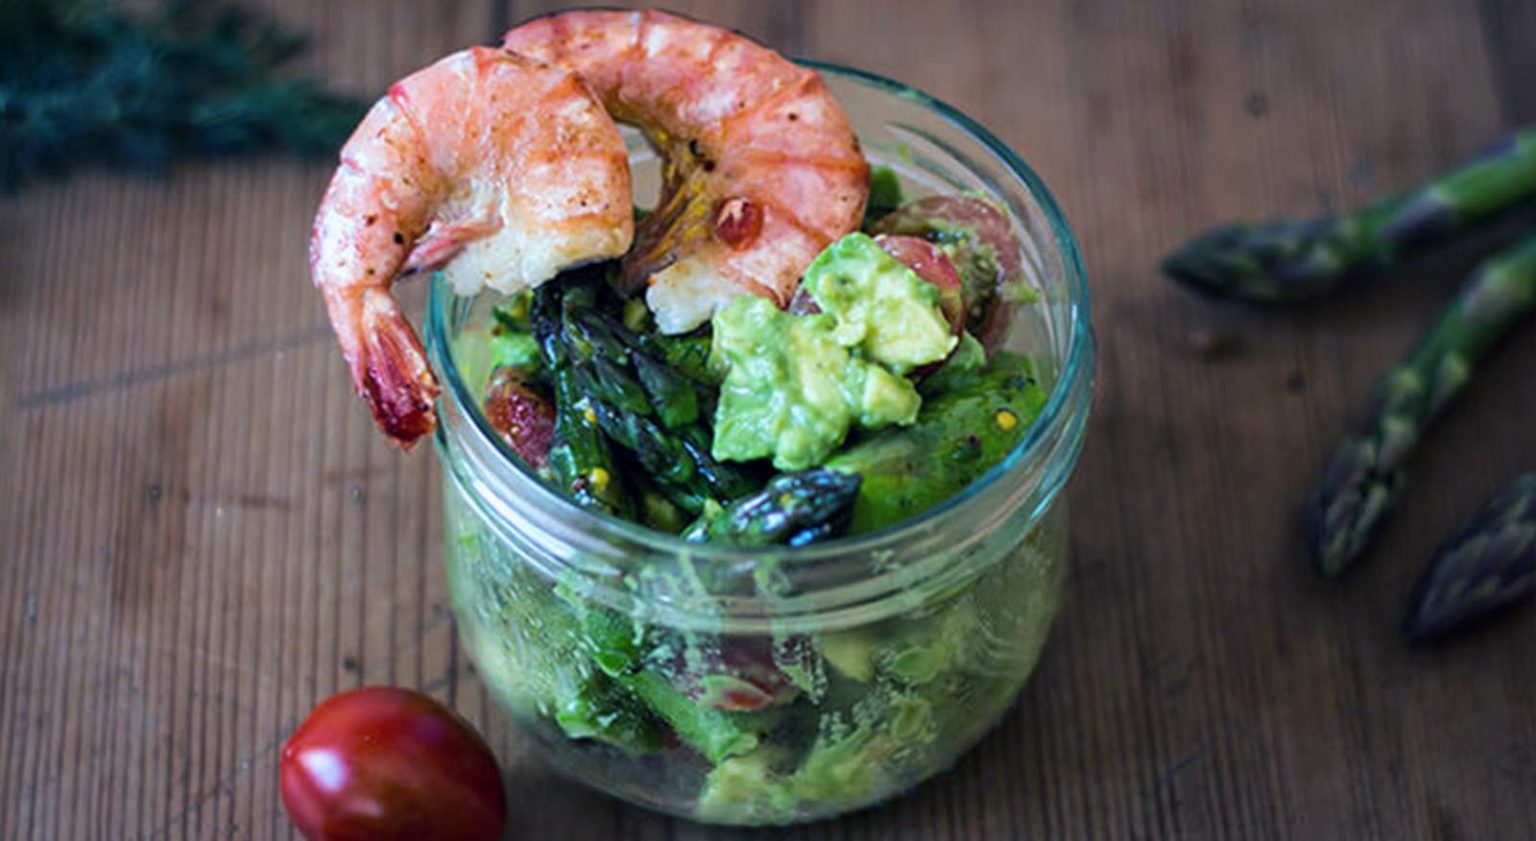 Herrlich erfrischend und gesund: Avocado Salat mit Garnelen (ketogen)